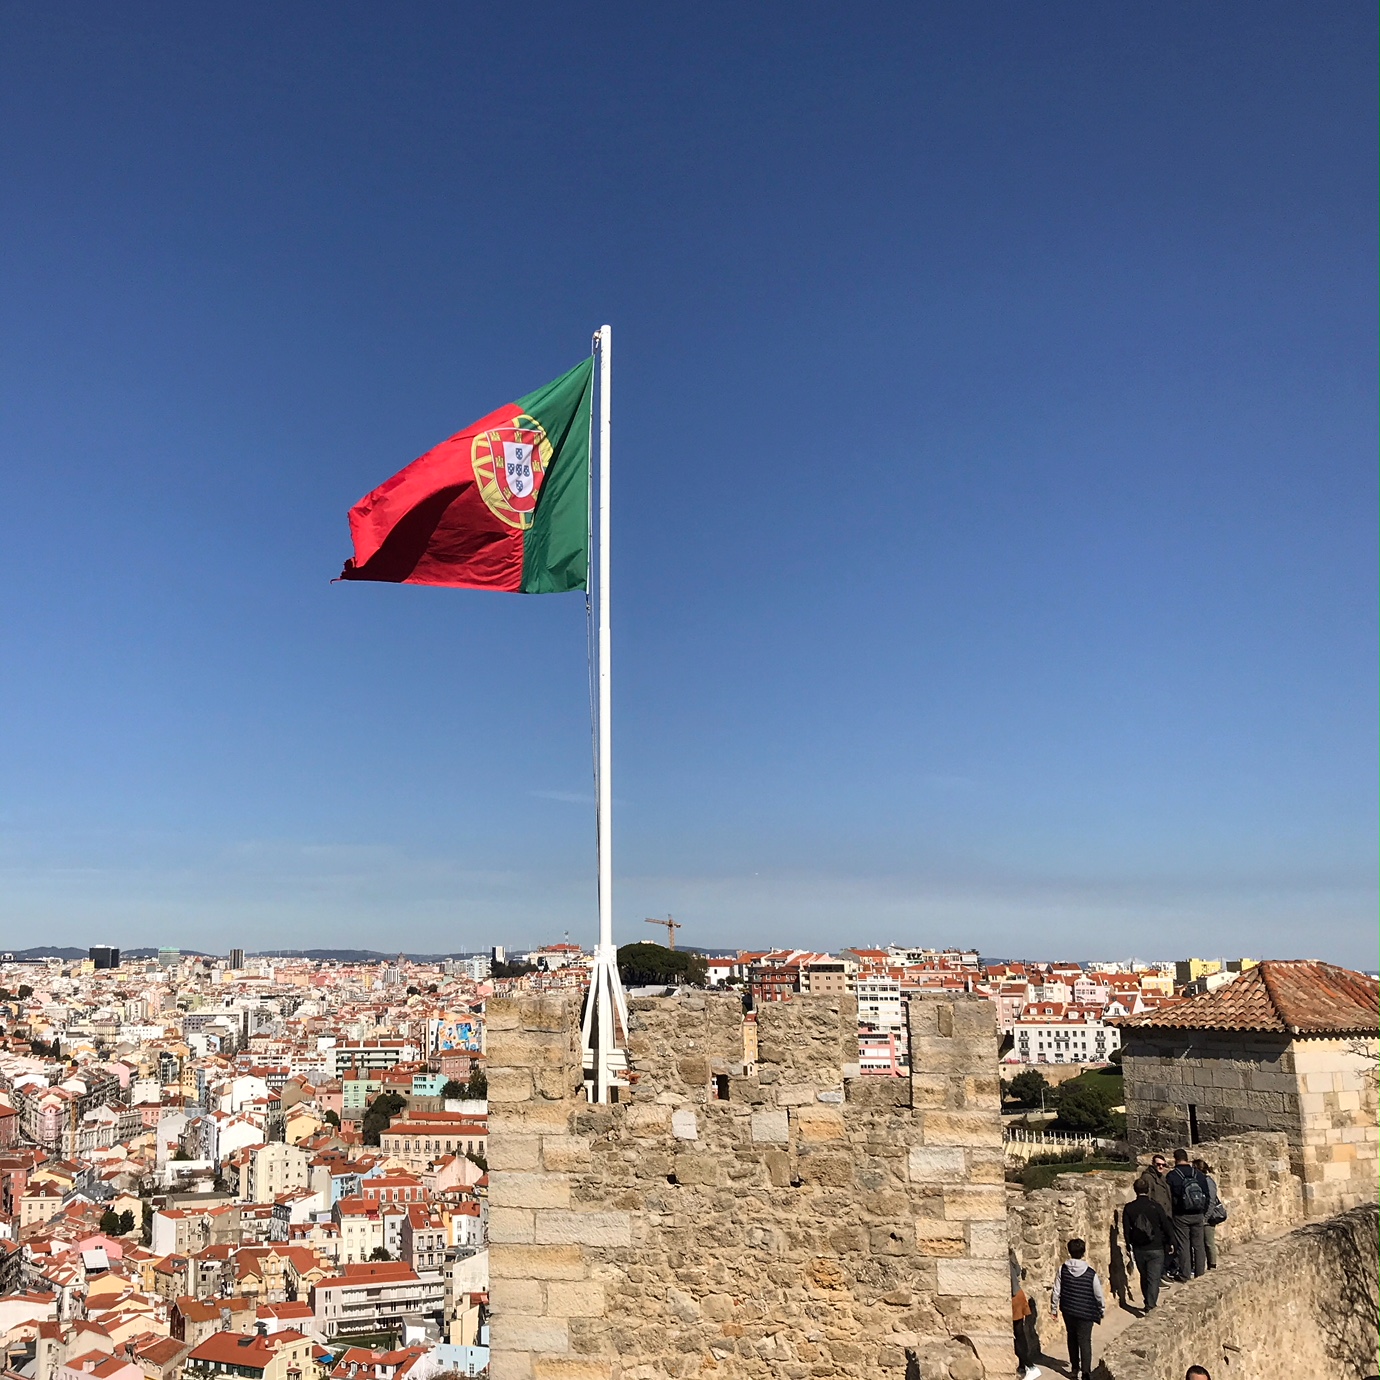 Castelo de São Jorge Lisbon Portugal